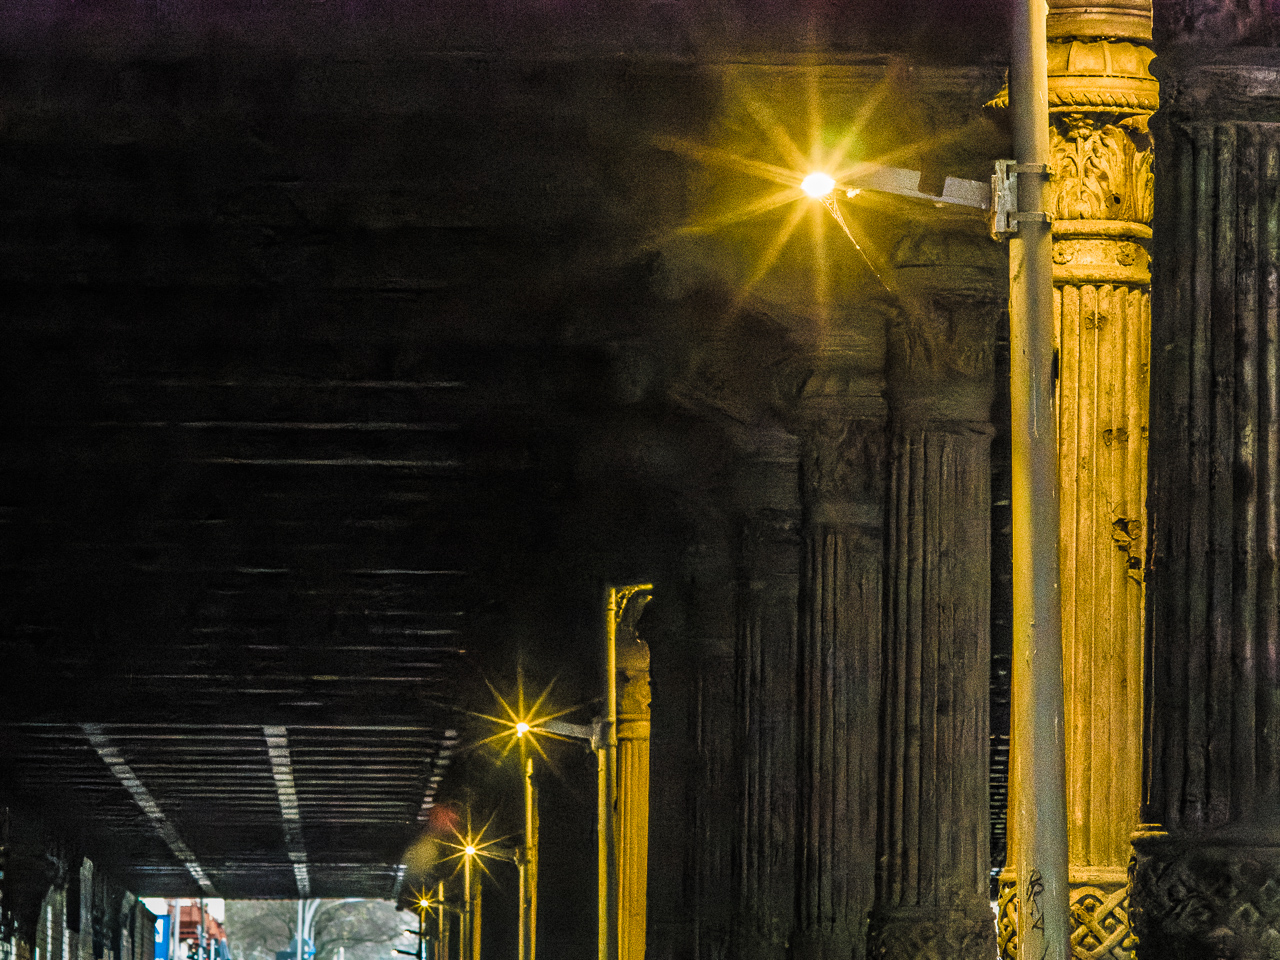 Eine StraßenUnterführung mit alt aussehenden Säulen mit Ornamenten. StraßenLaternen werfen sternförmige Lichter.